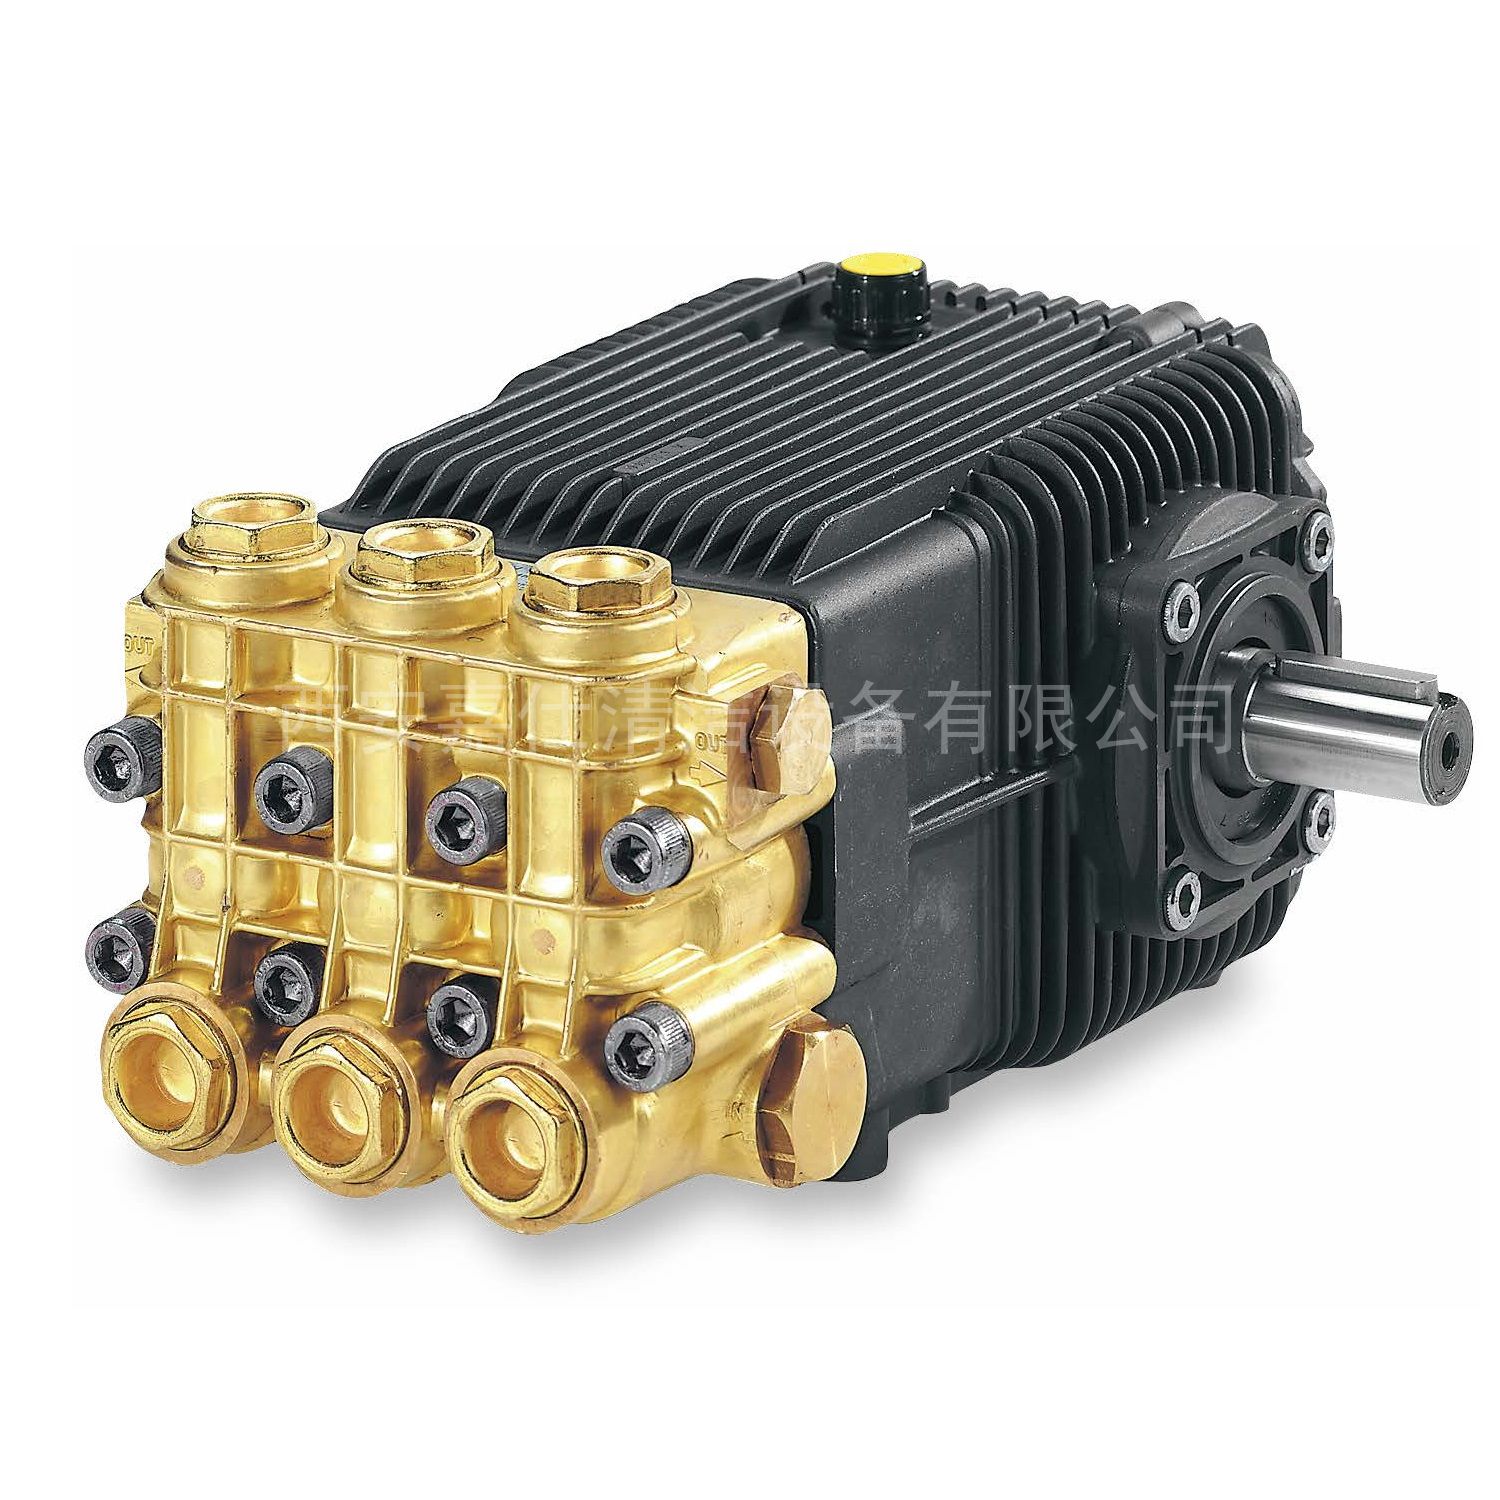 丹东AR高压泵 艾热高压柱塞泵 清洗泵增压喷雾加湿水泵